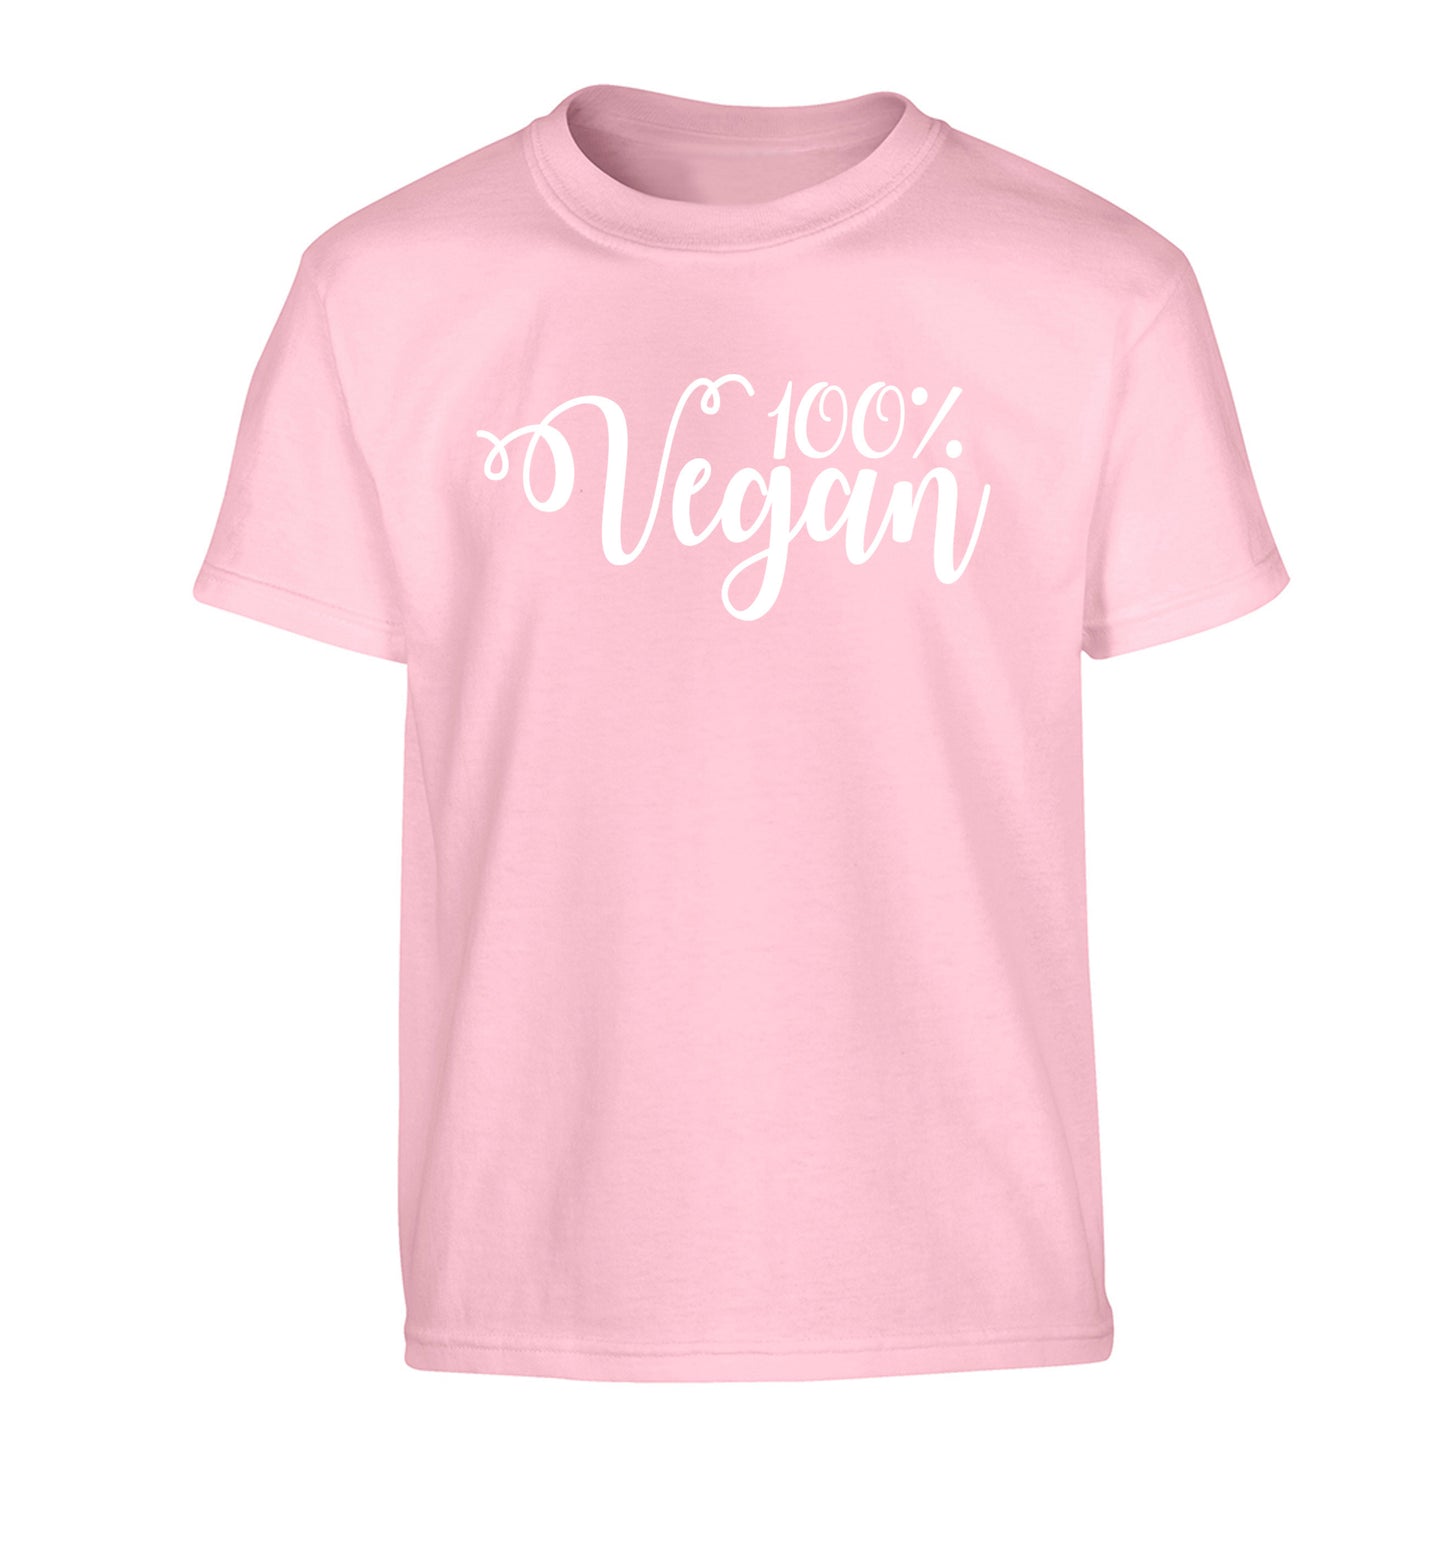 100% Vegan Children's light pink Tshirt 12-14 Years